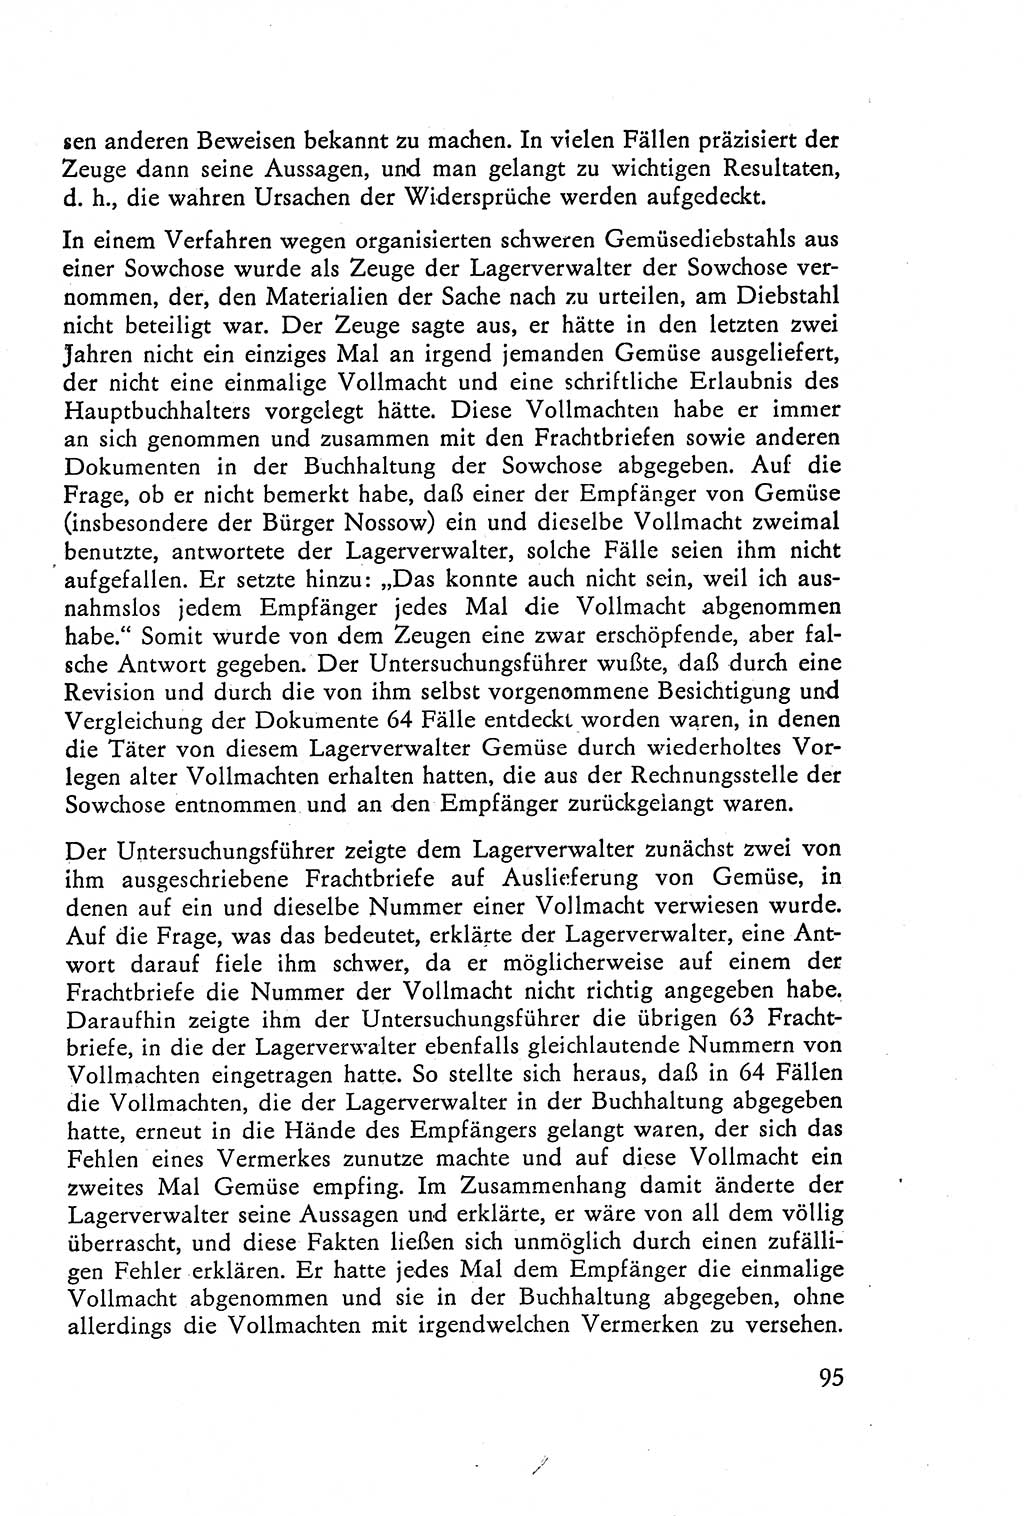 Die Vernehmung [Deutsche Demokratische Republik (DDR)] 1960, Seite 95 (Vern. DDR 1960, S. 95)